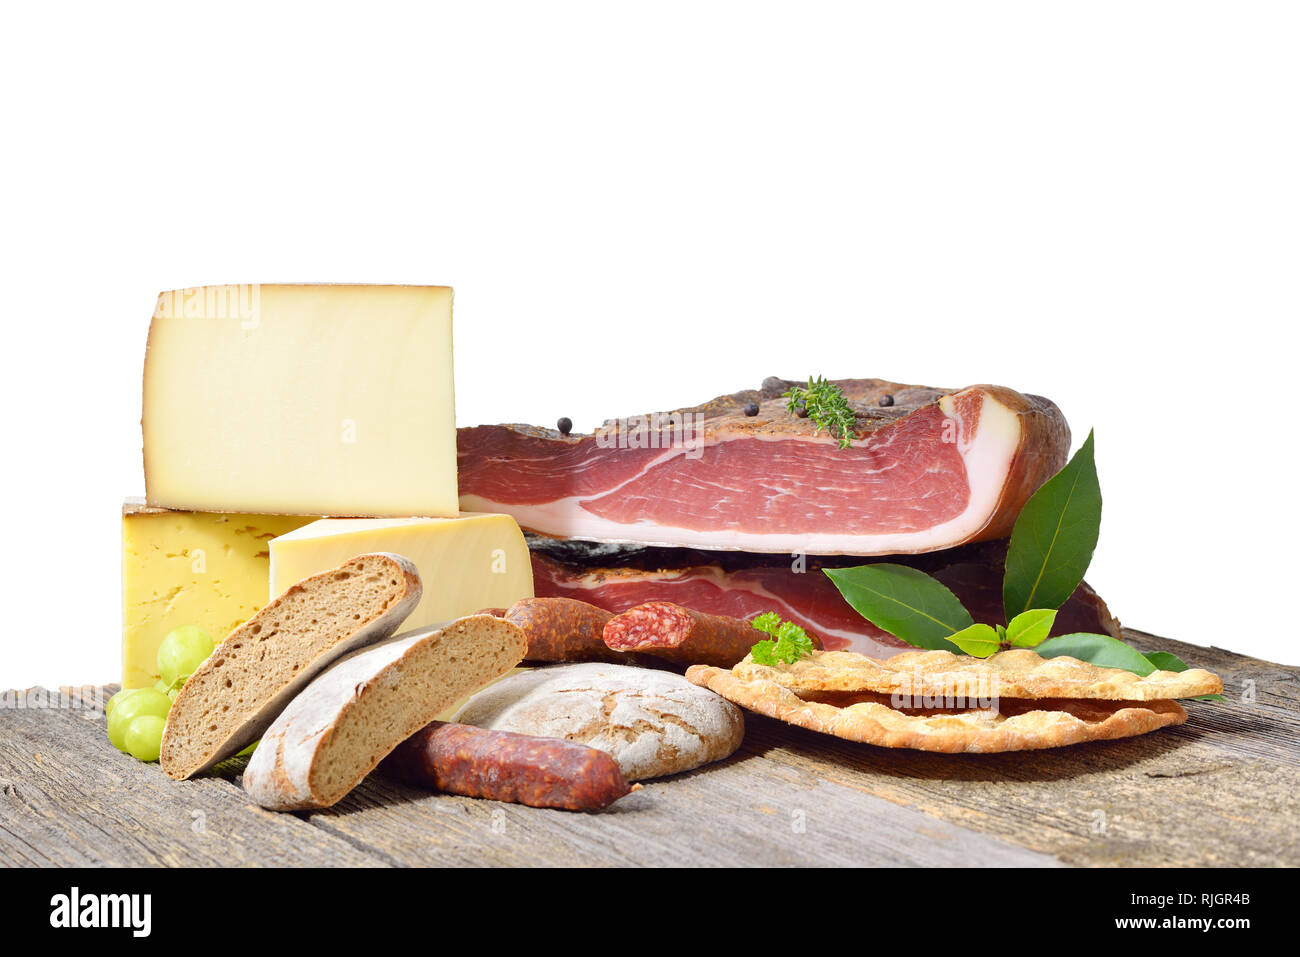 Südtiroler Spezialitäten wie Speck, wurst und Käse liegen auf einem rustikalen Tisch vor einem weißen Hintergrund Stockfoto